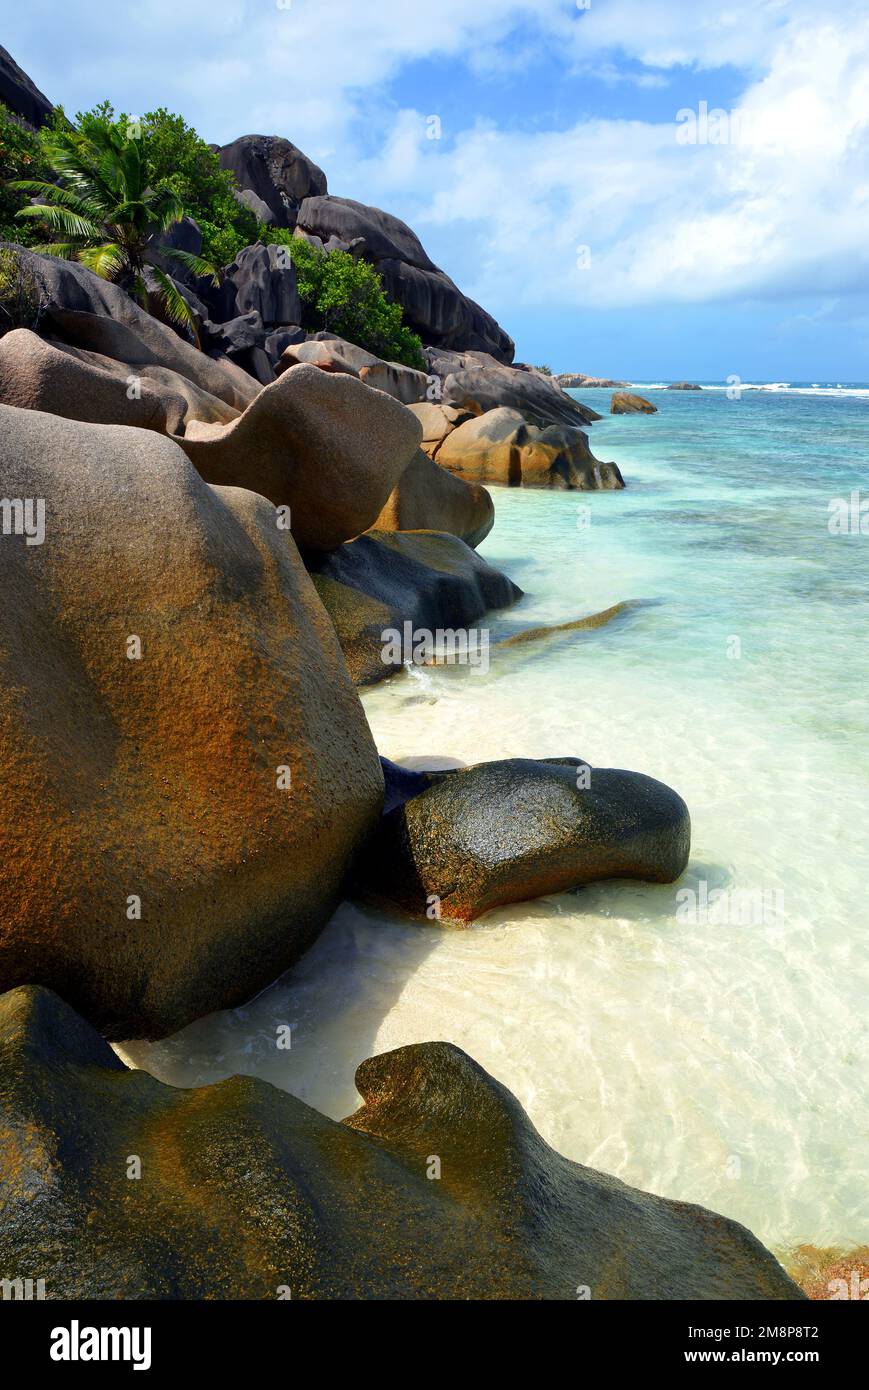 Costa de la isla tropical de la Digue, Océano Índico, Seychelles. Foto de stock